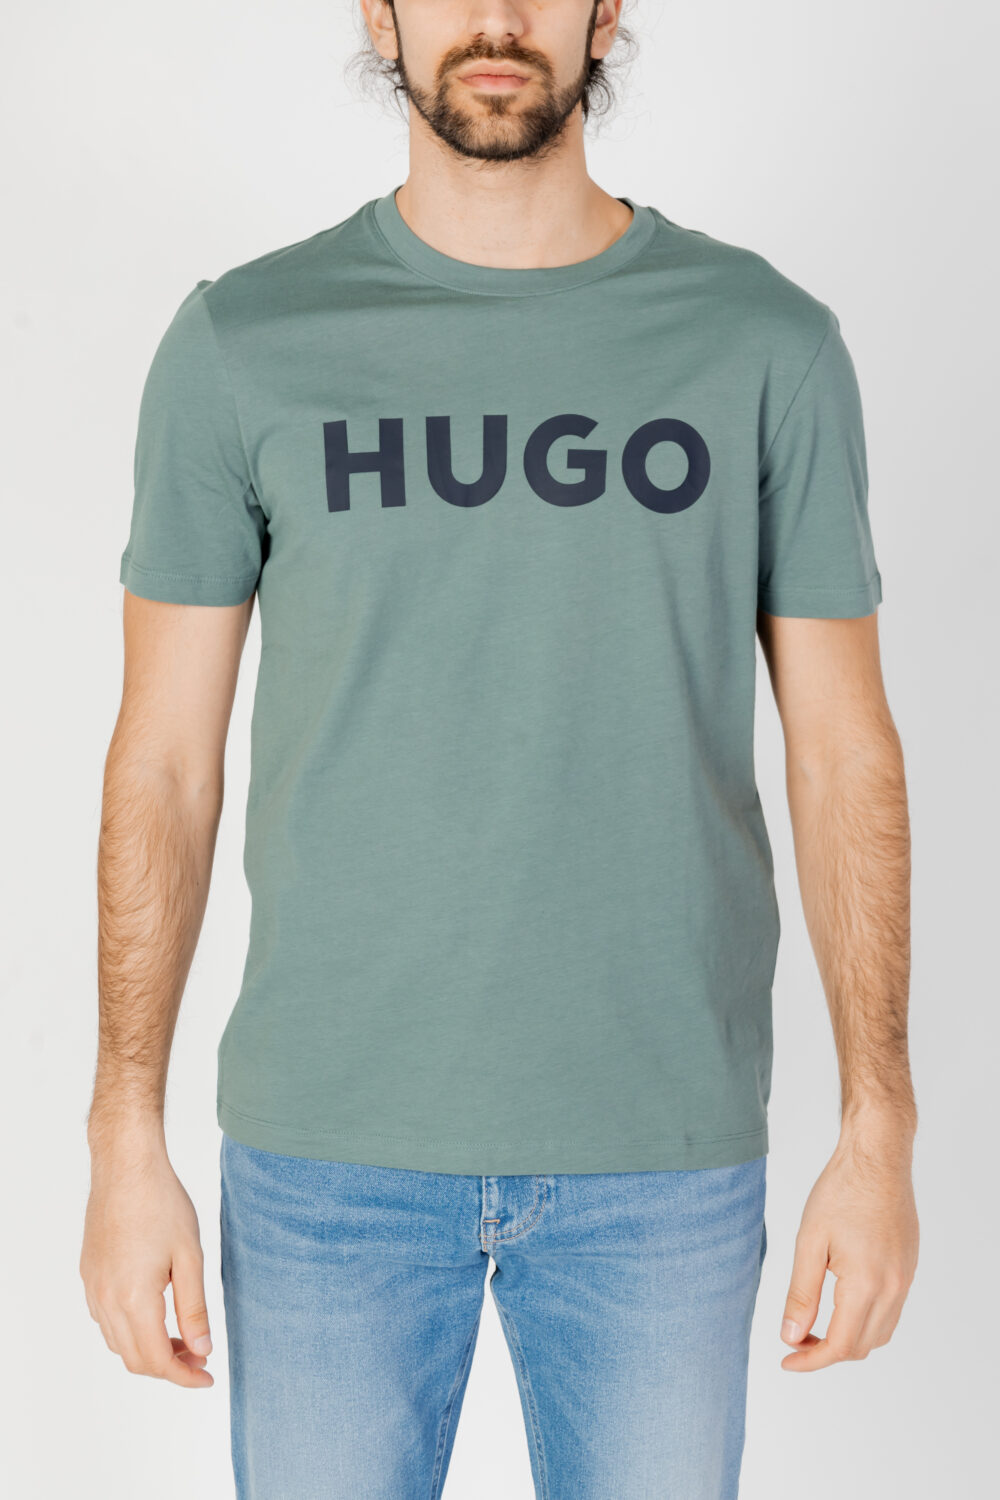 T-shirt Hugo Dulivio 10229761 01 Verde Scuro - Foto 5